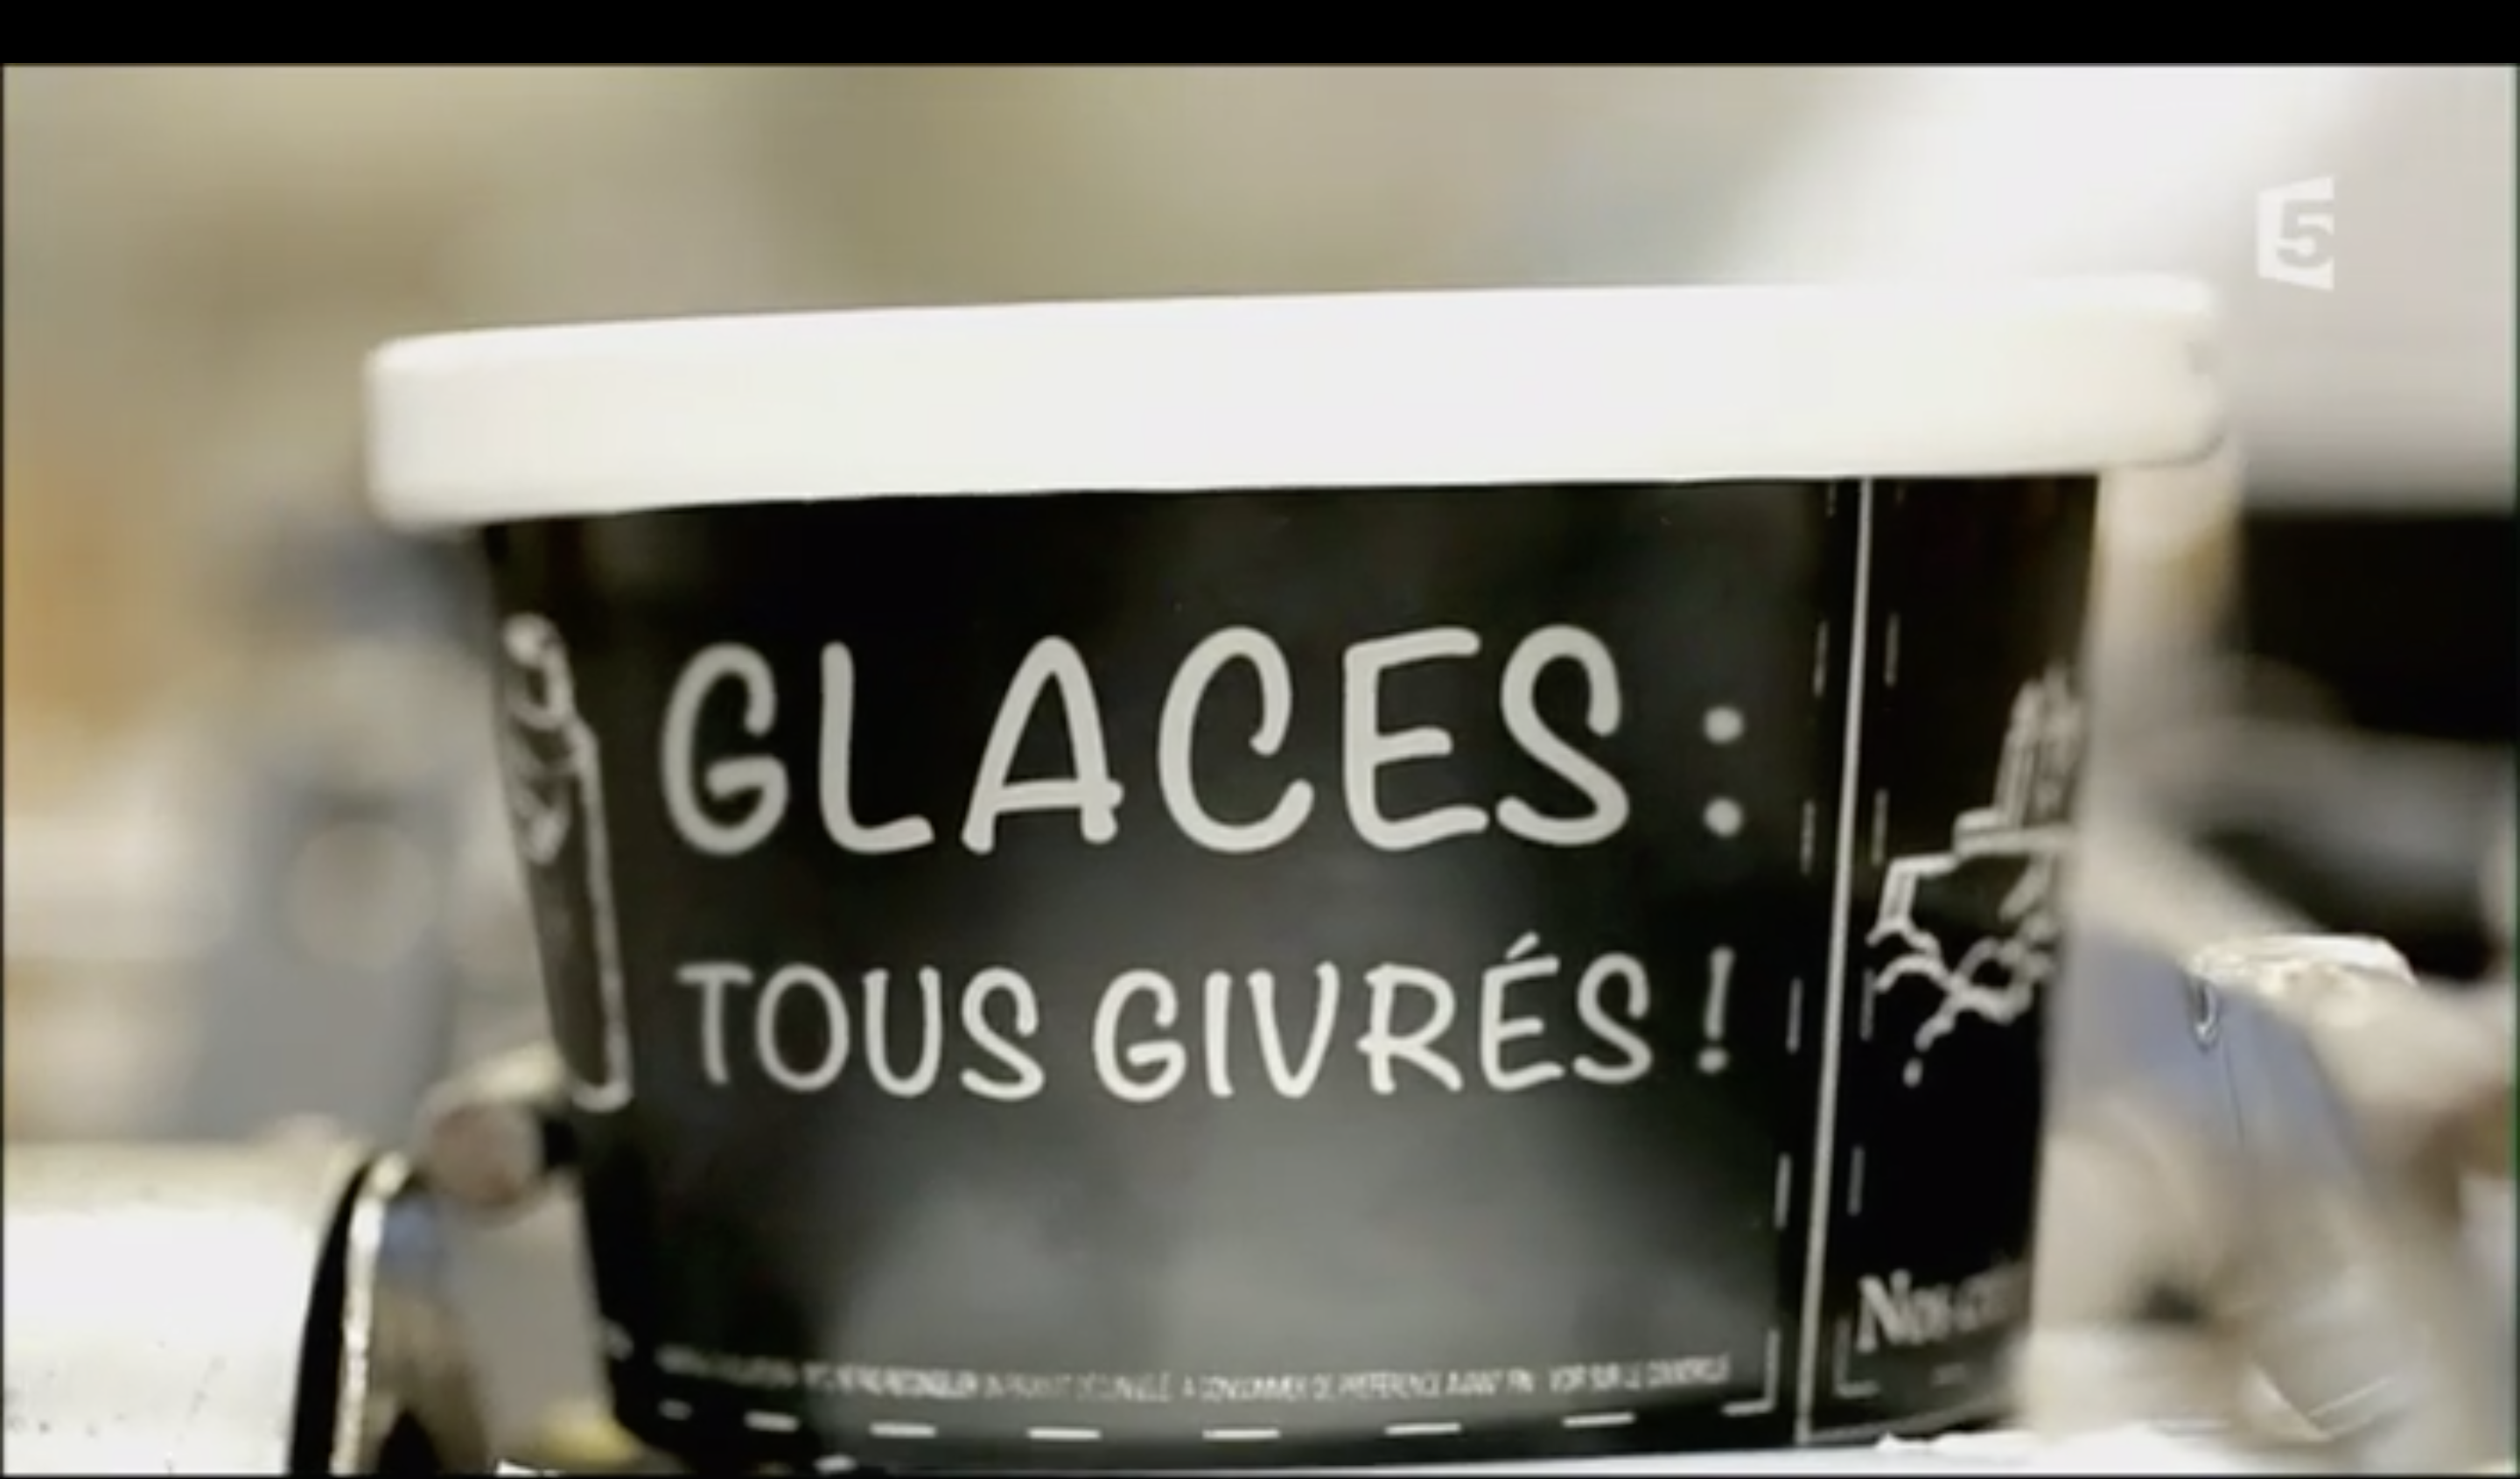 documentaire “Glaces, tous givrés !” sur France 5